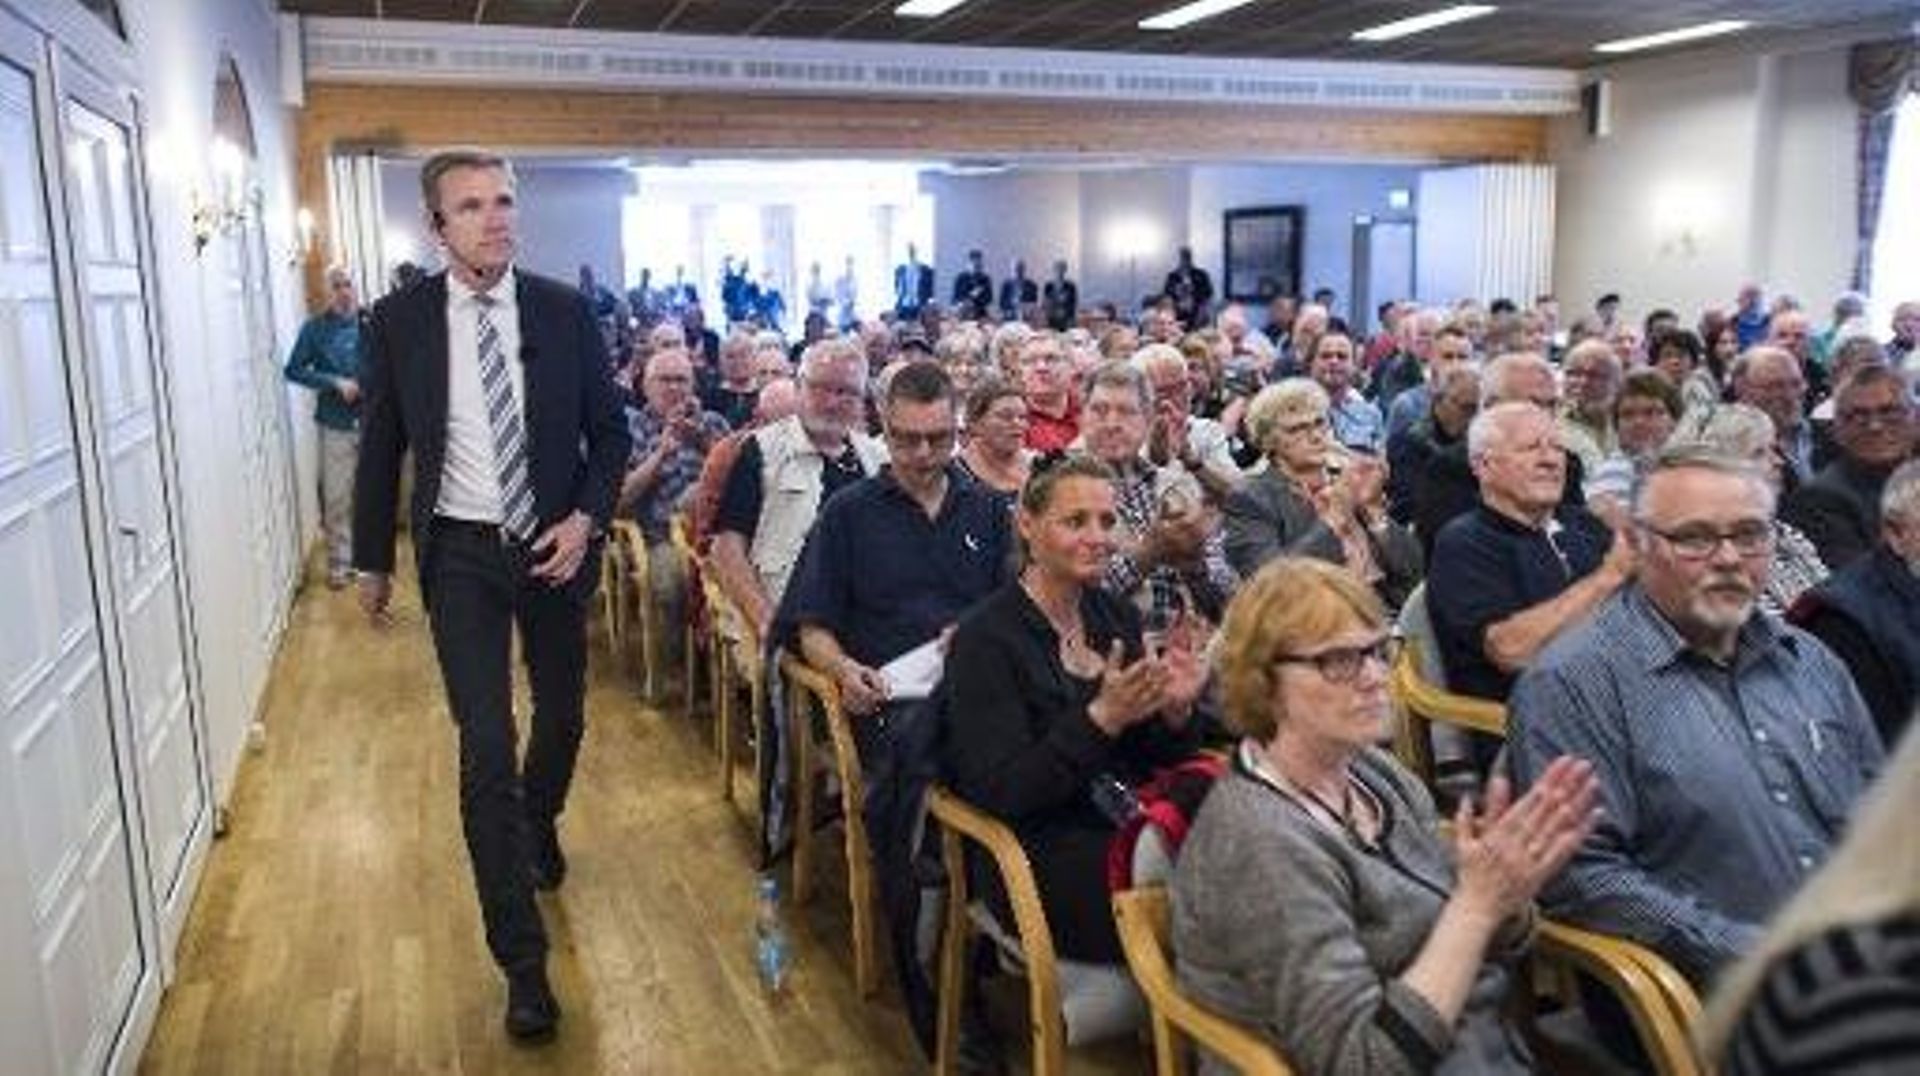 Le président du Parti populaire danois (DF), Kristian Thulesen Dahl, lors d'un meeting à Toender, dans le sud du Danemark, le 9 juin 2015 